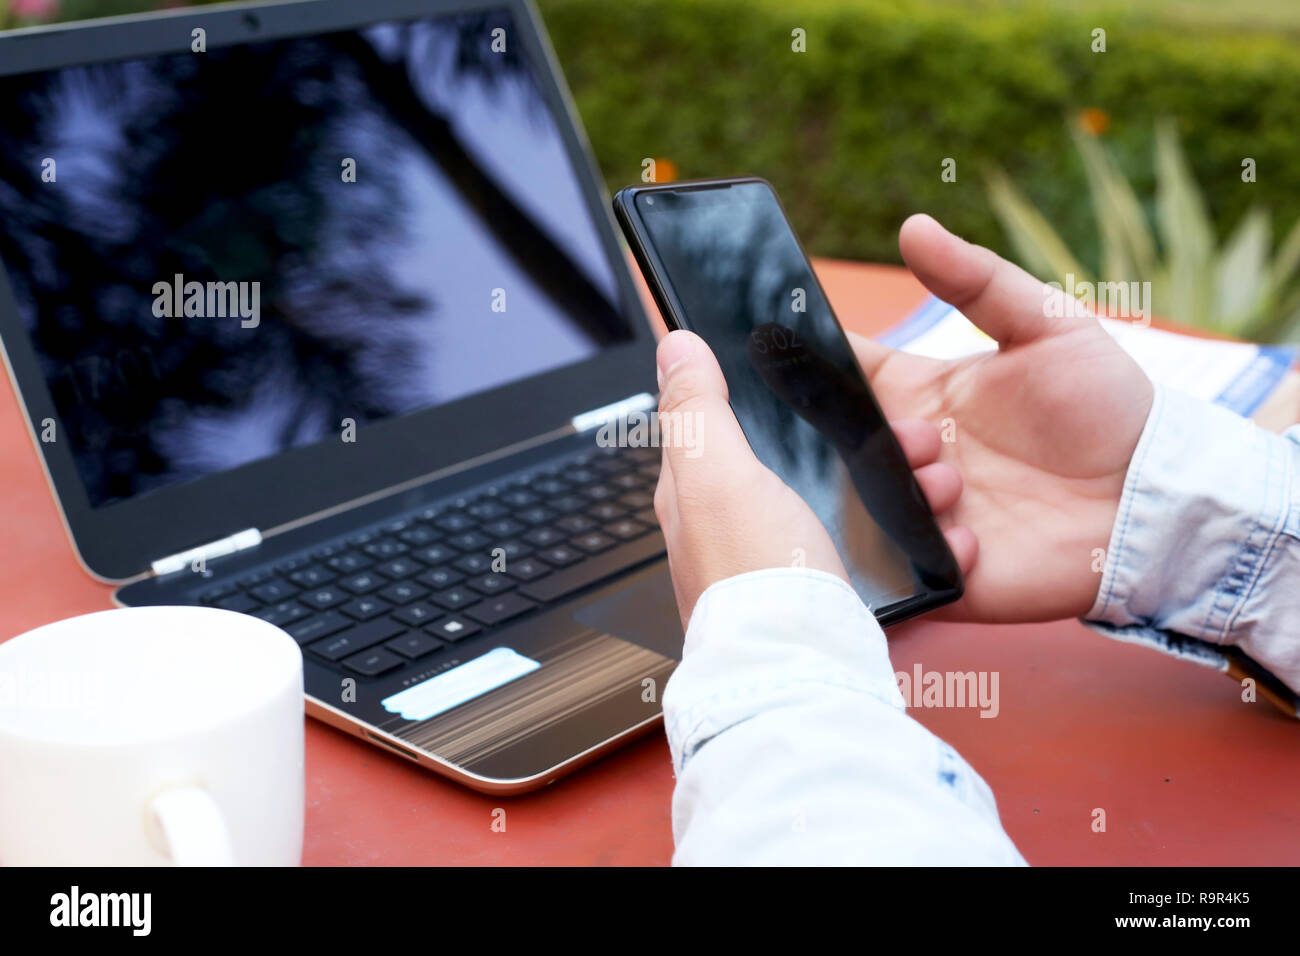 Photo de l'homme main est l'utilisation de smartphone avec ordinateur portable et tasse sur la table. Banque D'Images